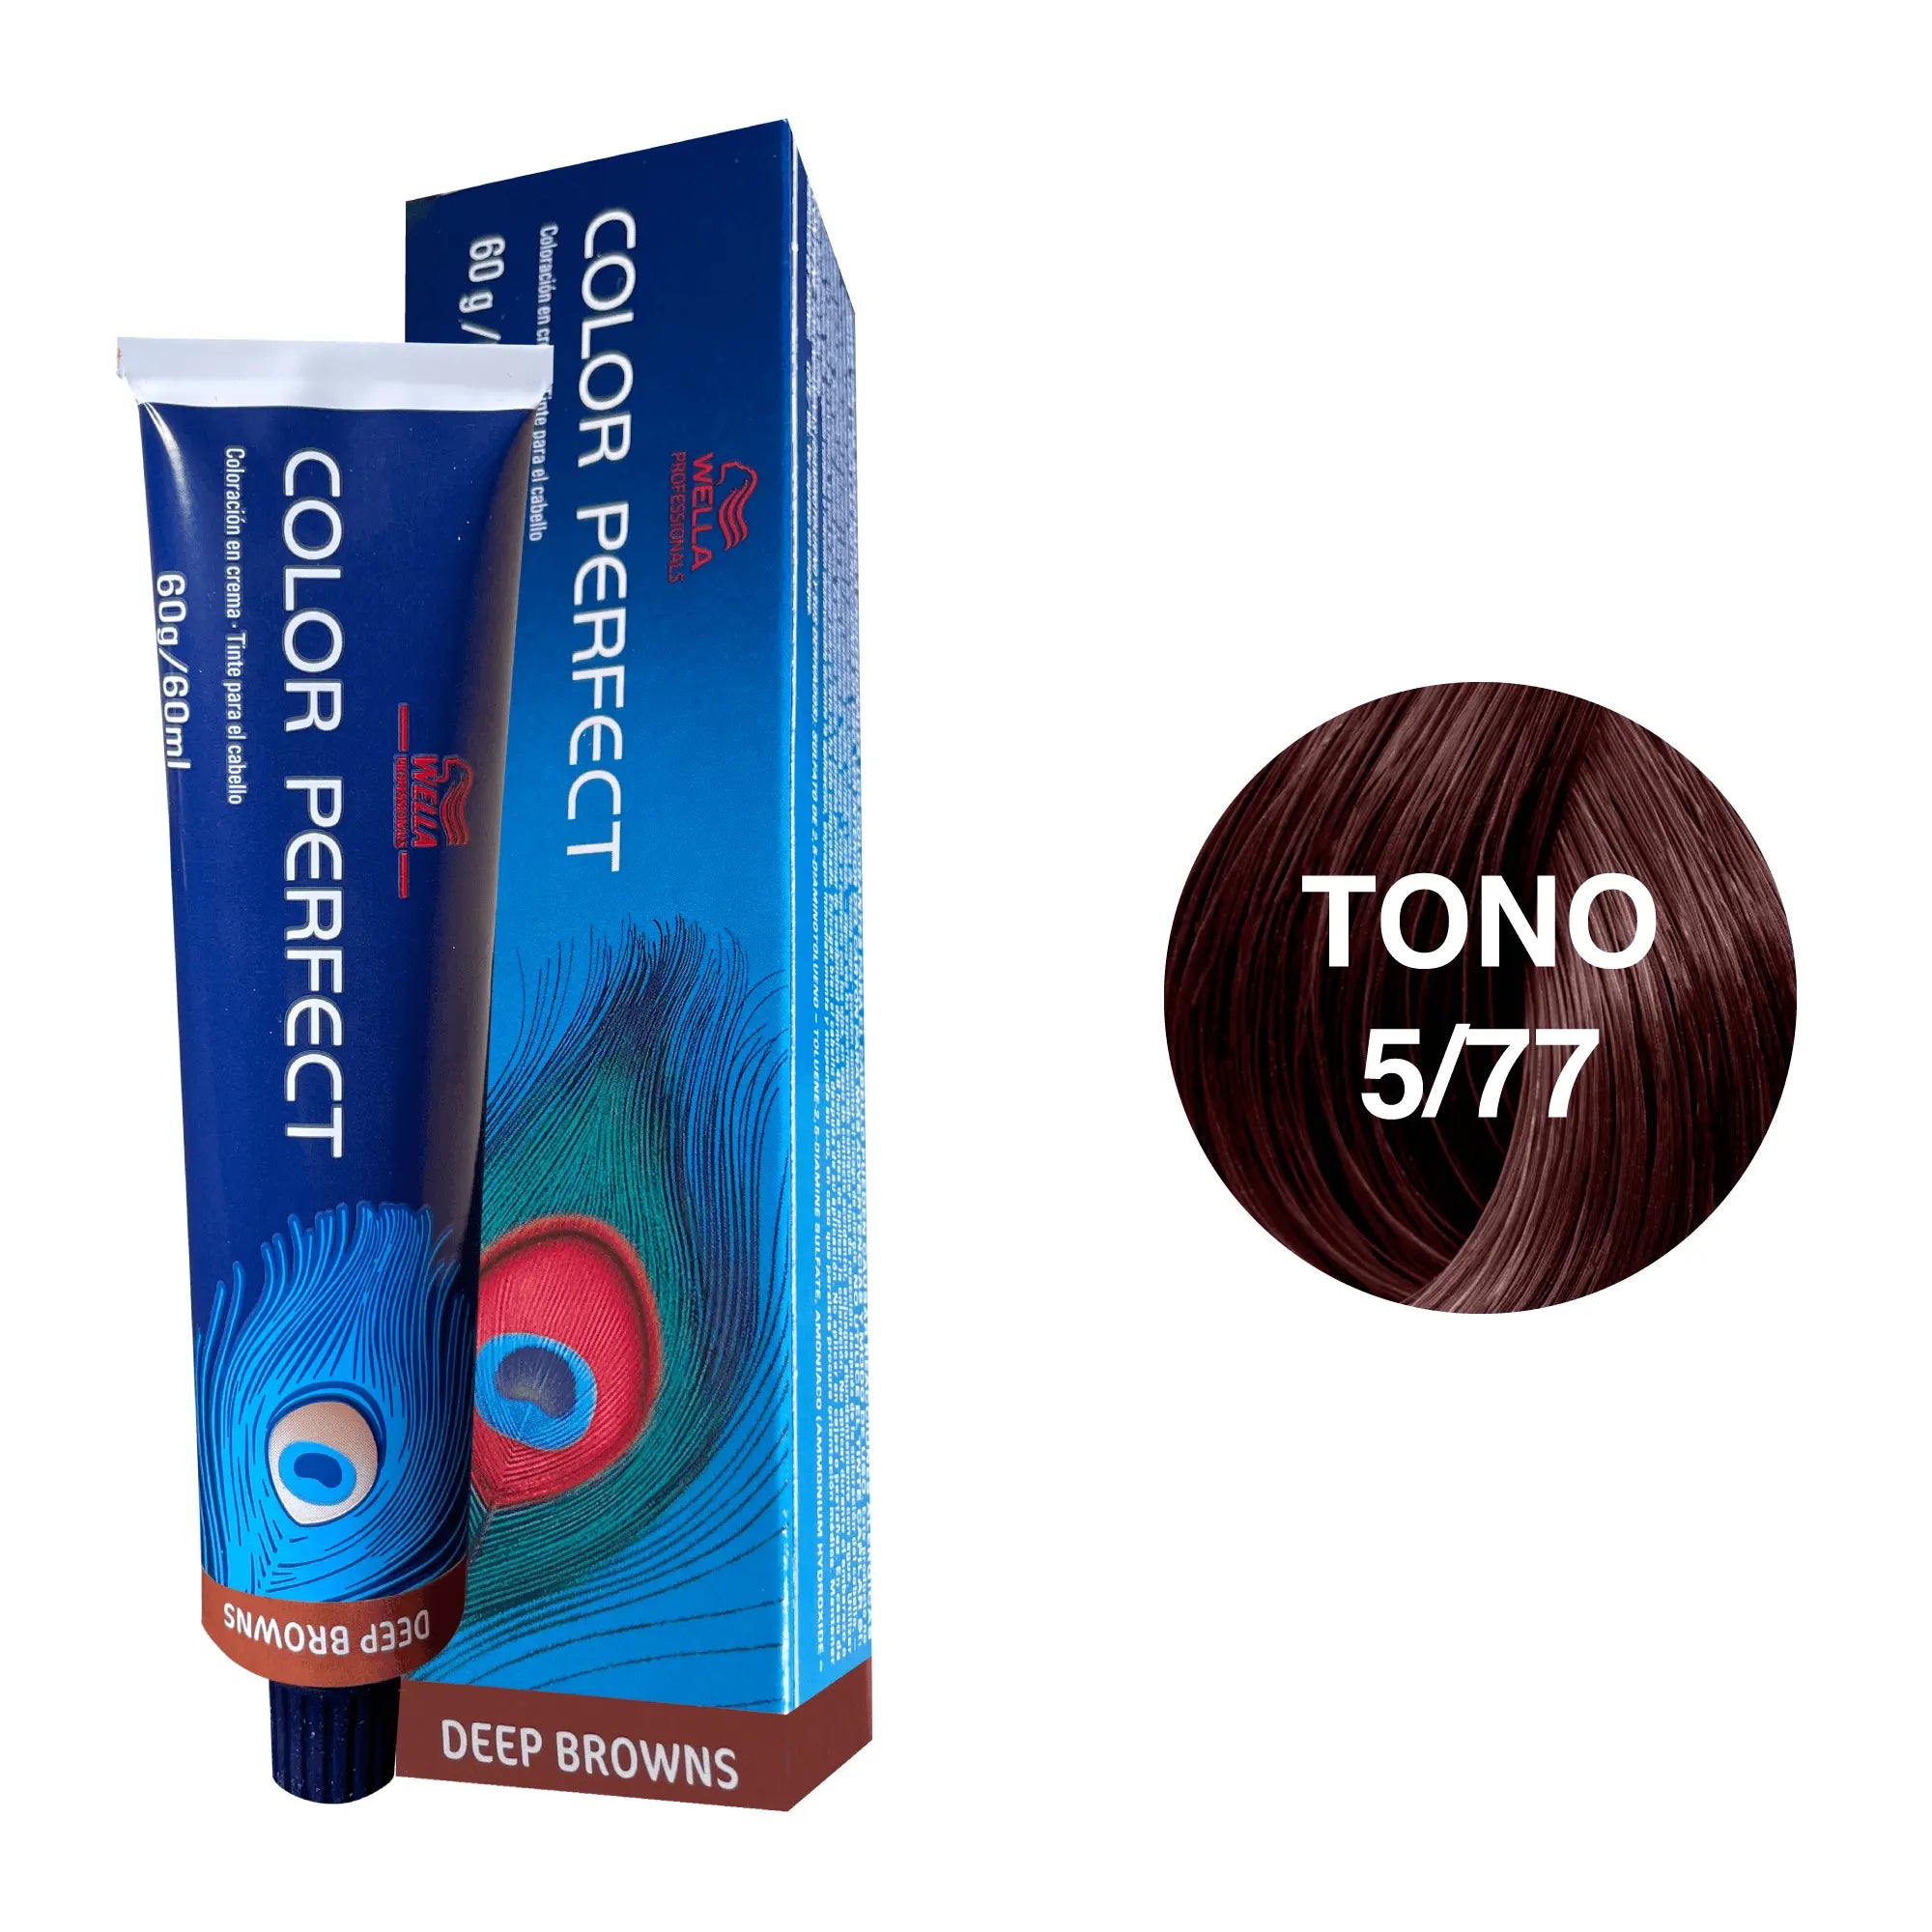 Tinte Wella Color Perfect Tono 5/77 60ml - Magic Mechas